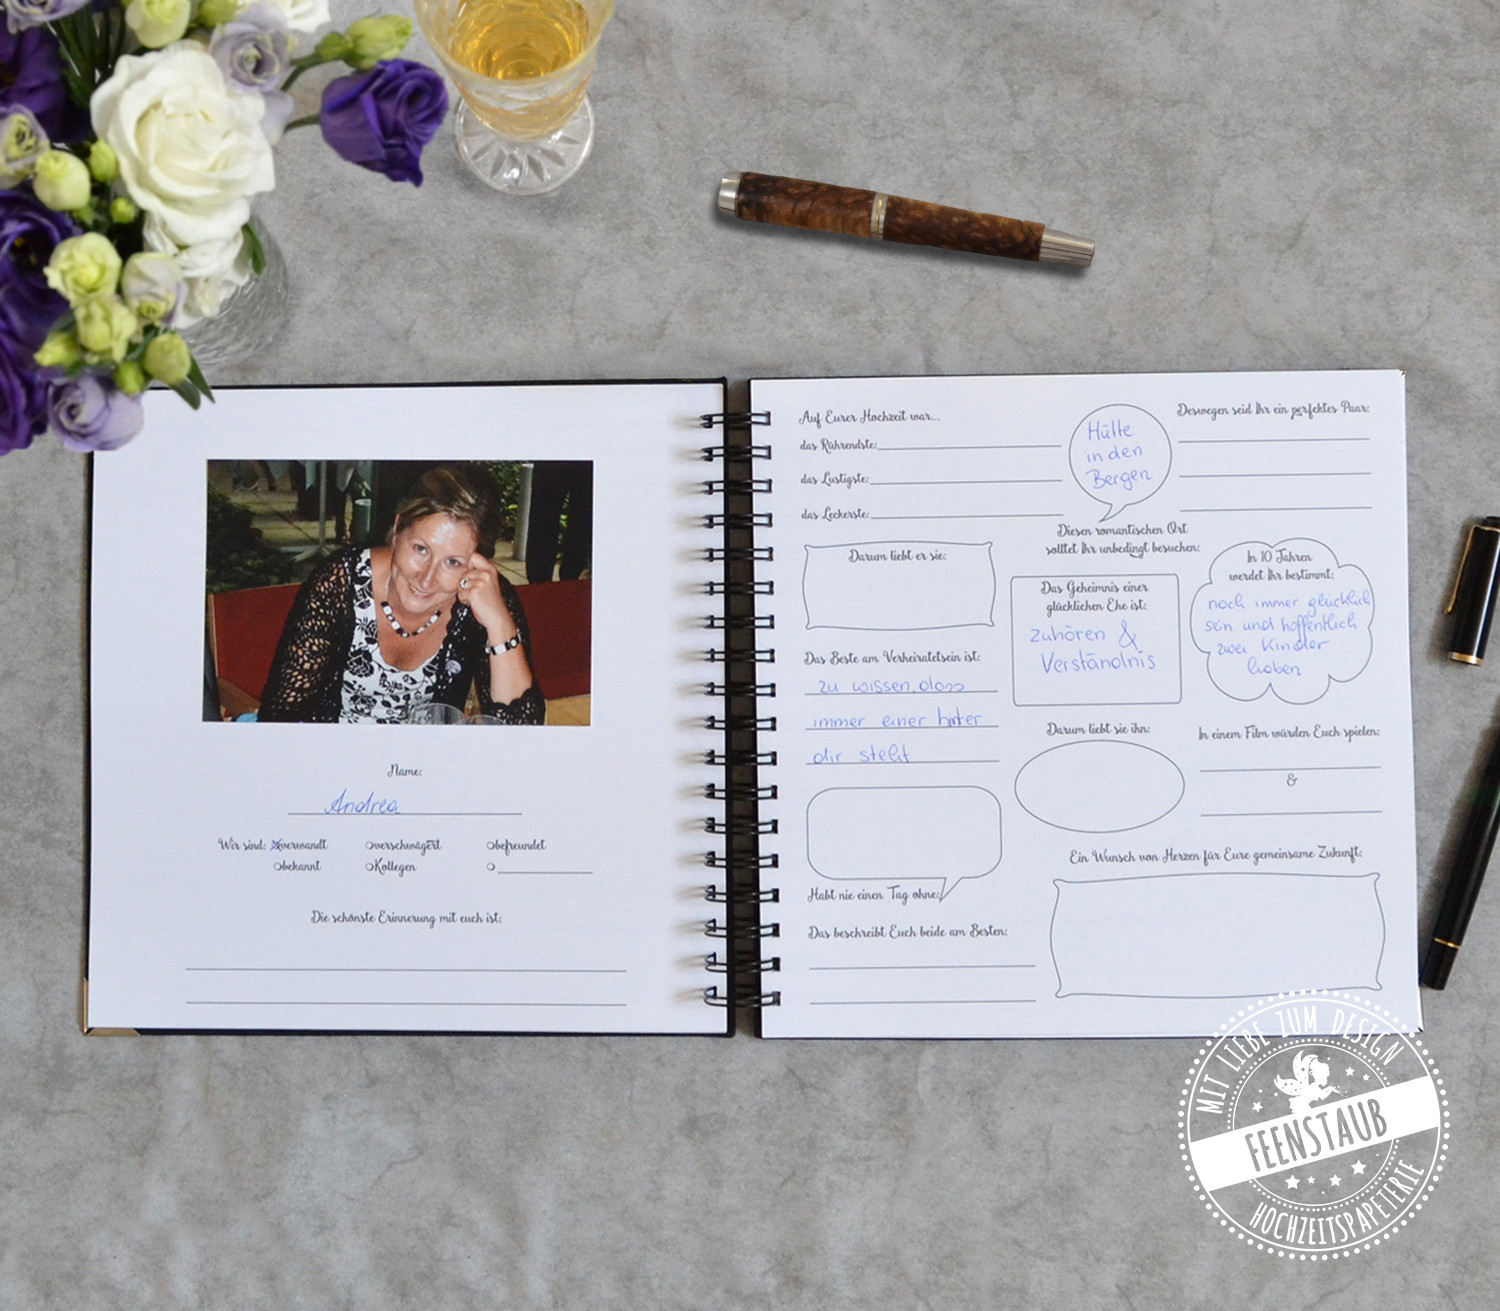 Gästebuch Hochzeit Zum Ausfüllen
 Gästebuch für Hochzeit mit Fragen personalisierbar